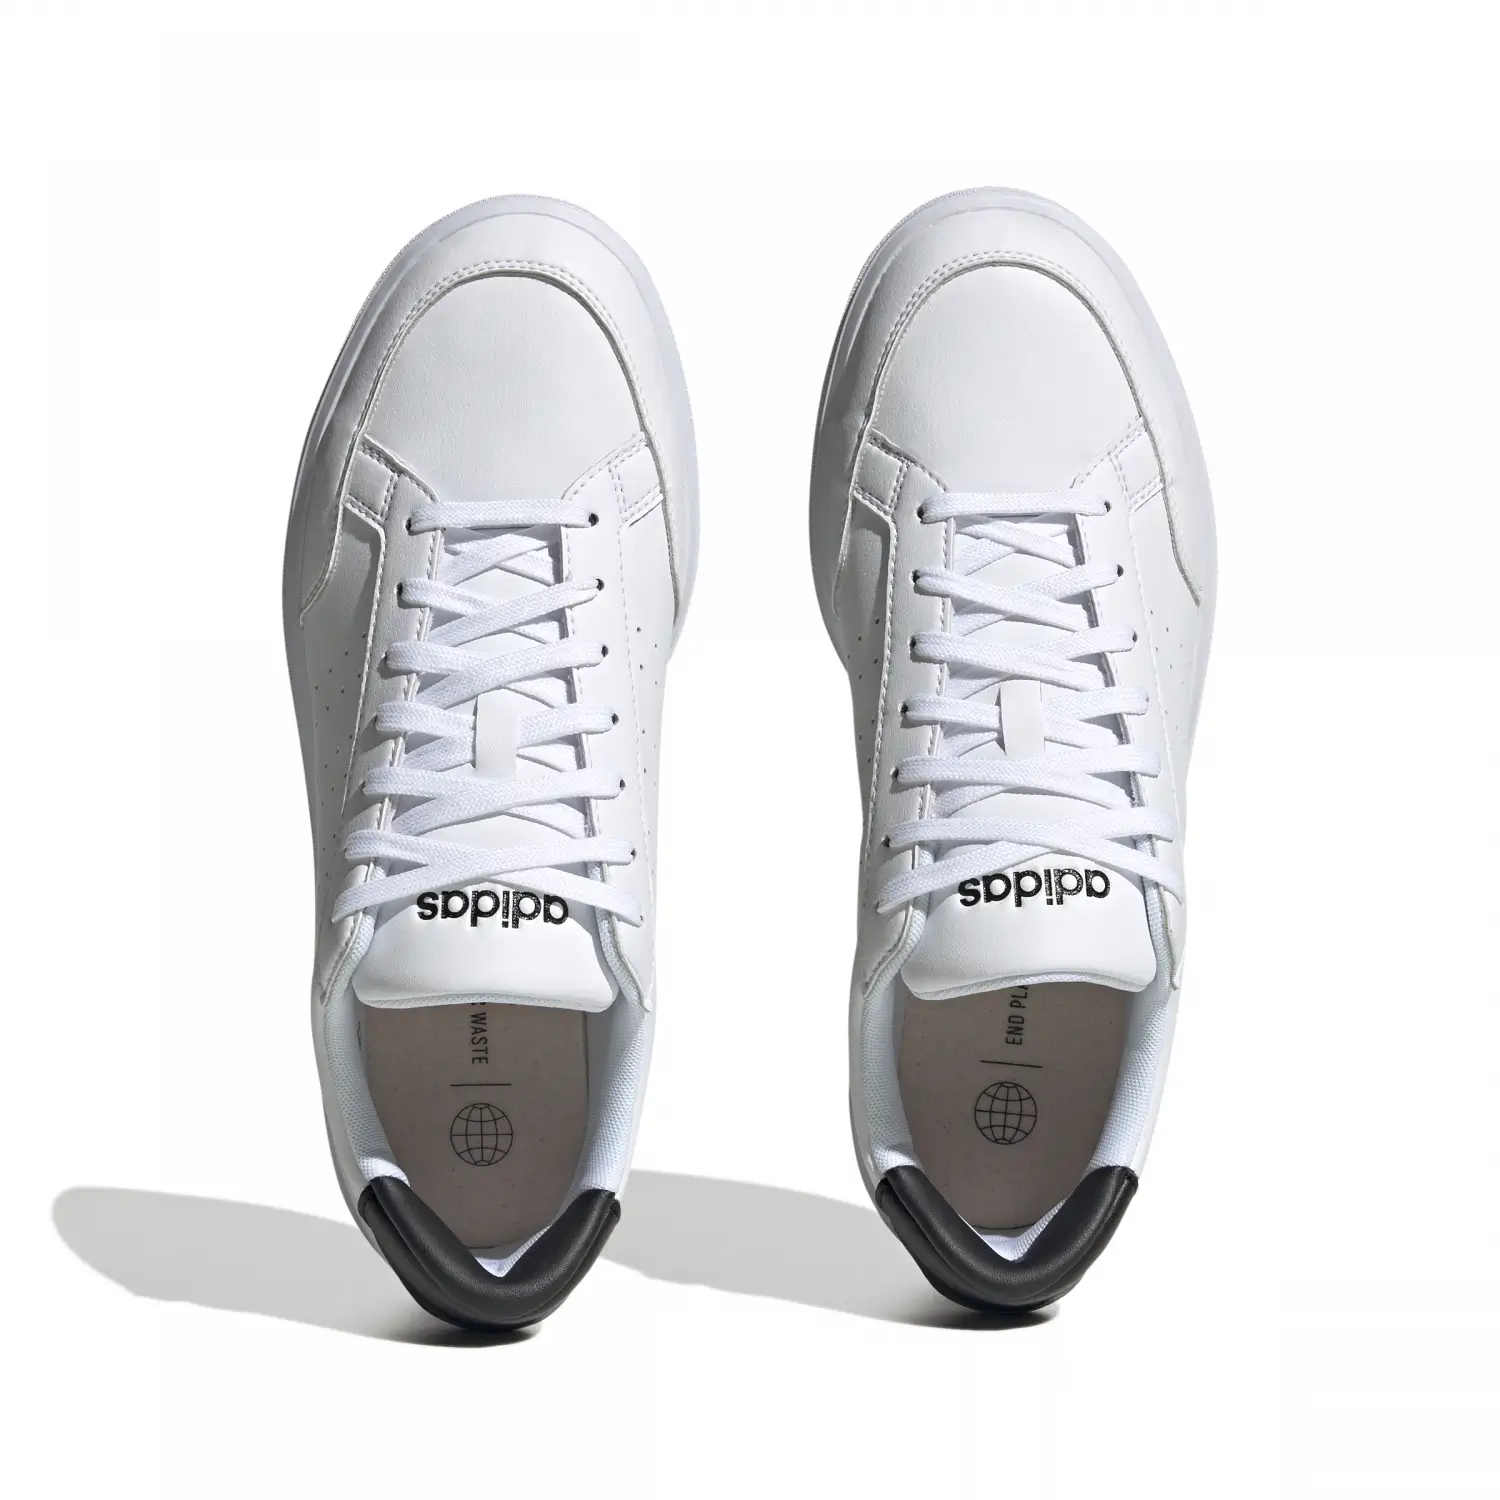 adidas Nova Court Beyaz Erkek Günlük Ayakkabı H06238